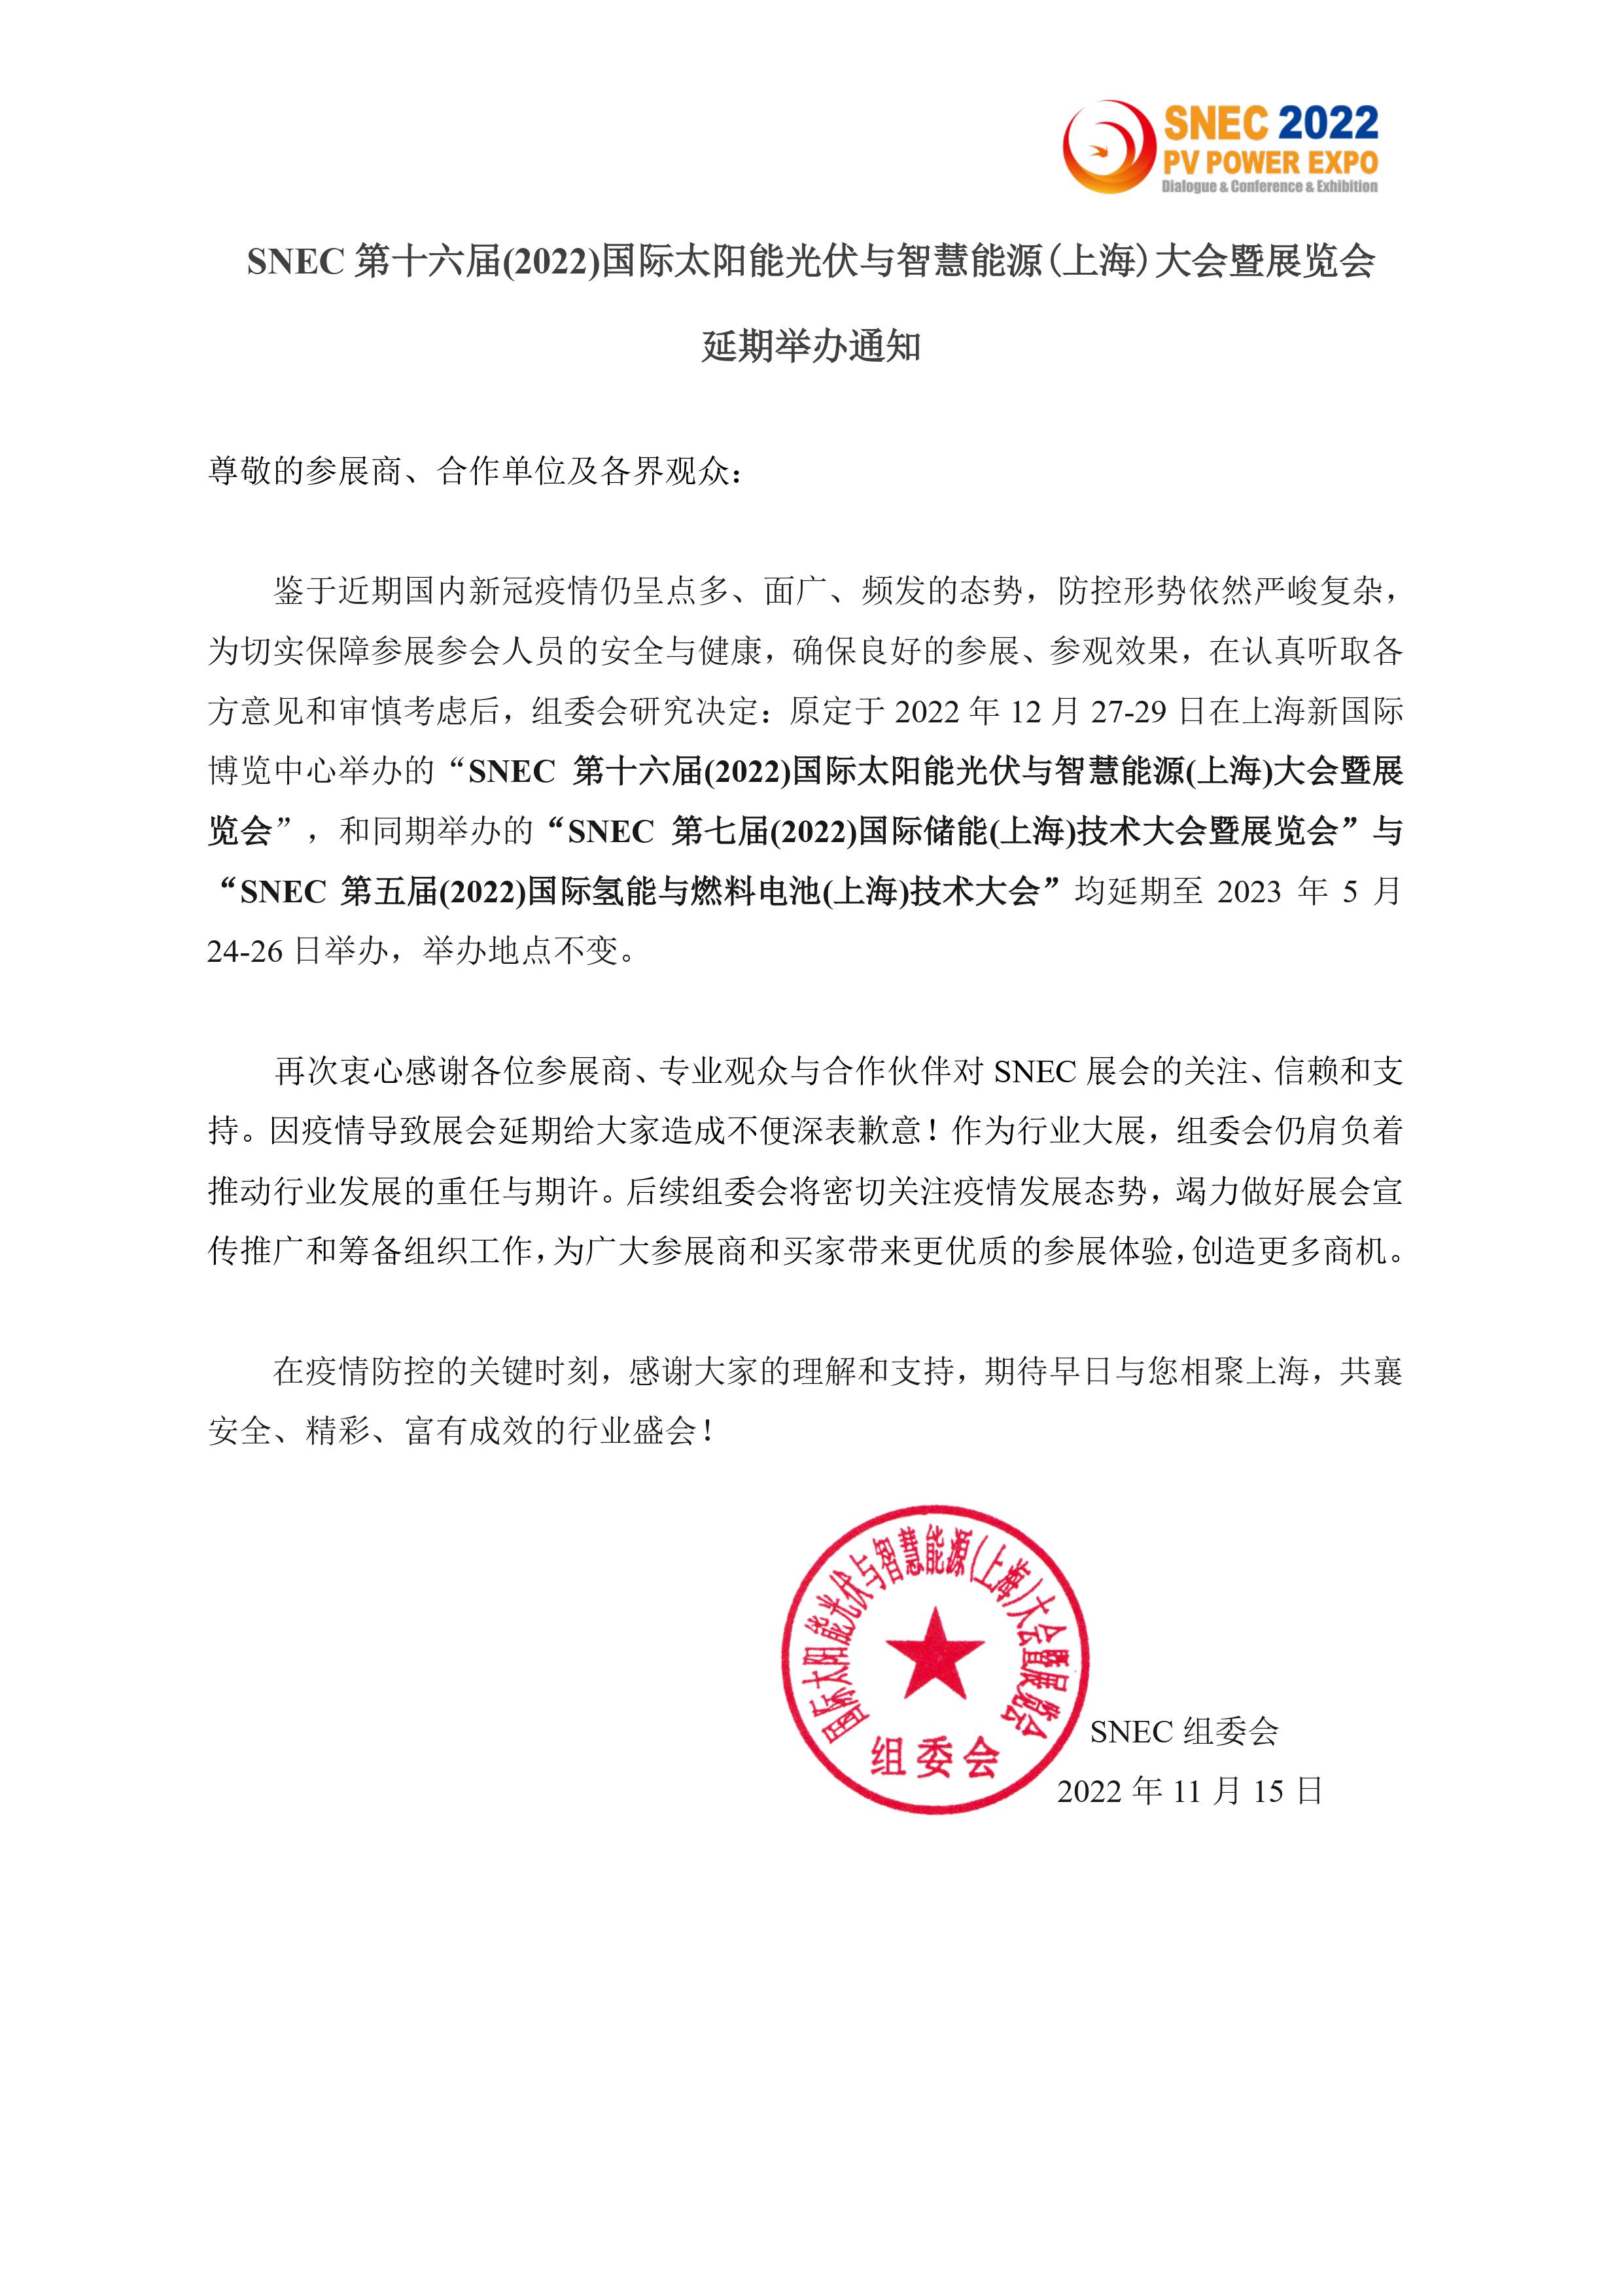 2022年上海SNEC光伏展延期日期已定-2023年5月24-26日